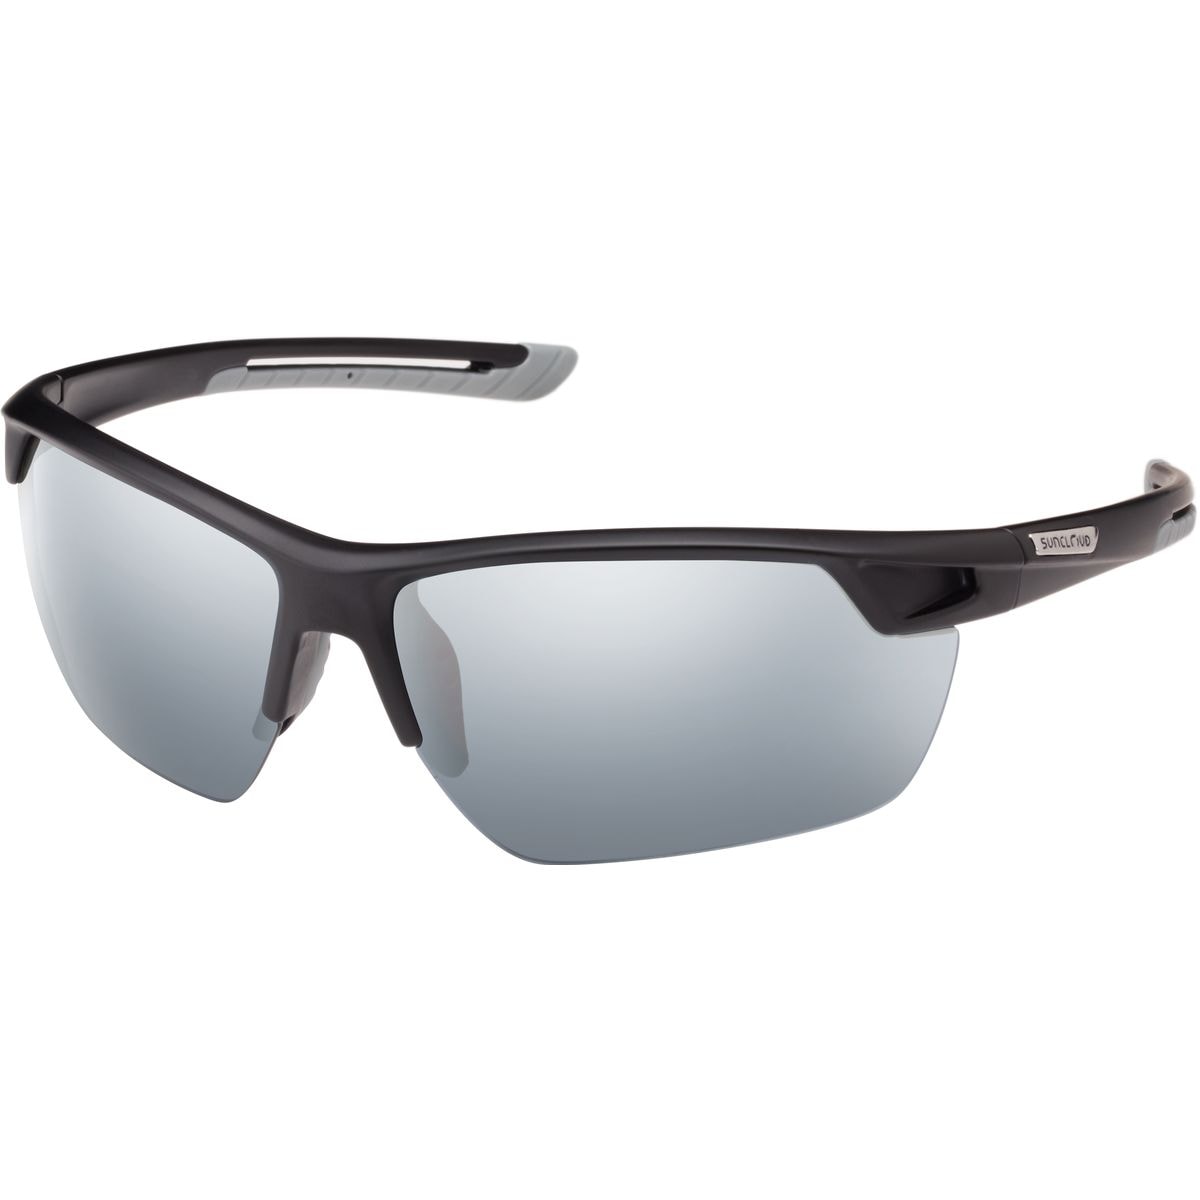 Поляризованные солнцезащитные очки contender Suncloud Polarized Optics, цвет matte black/silver mirror очки солнцезащитные stylemark polarized l1505d